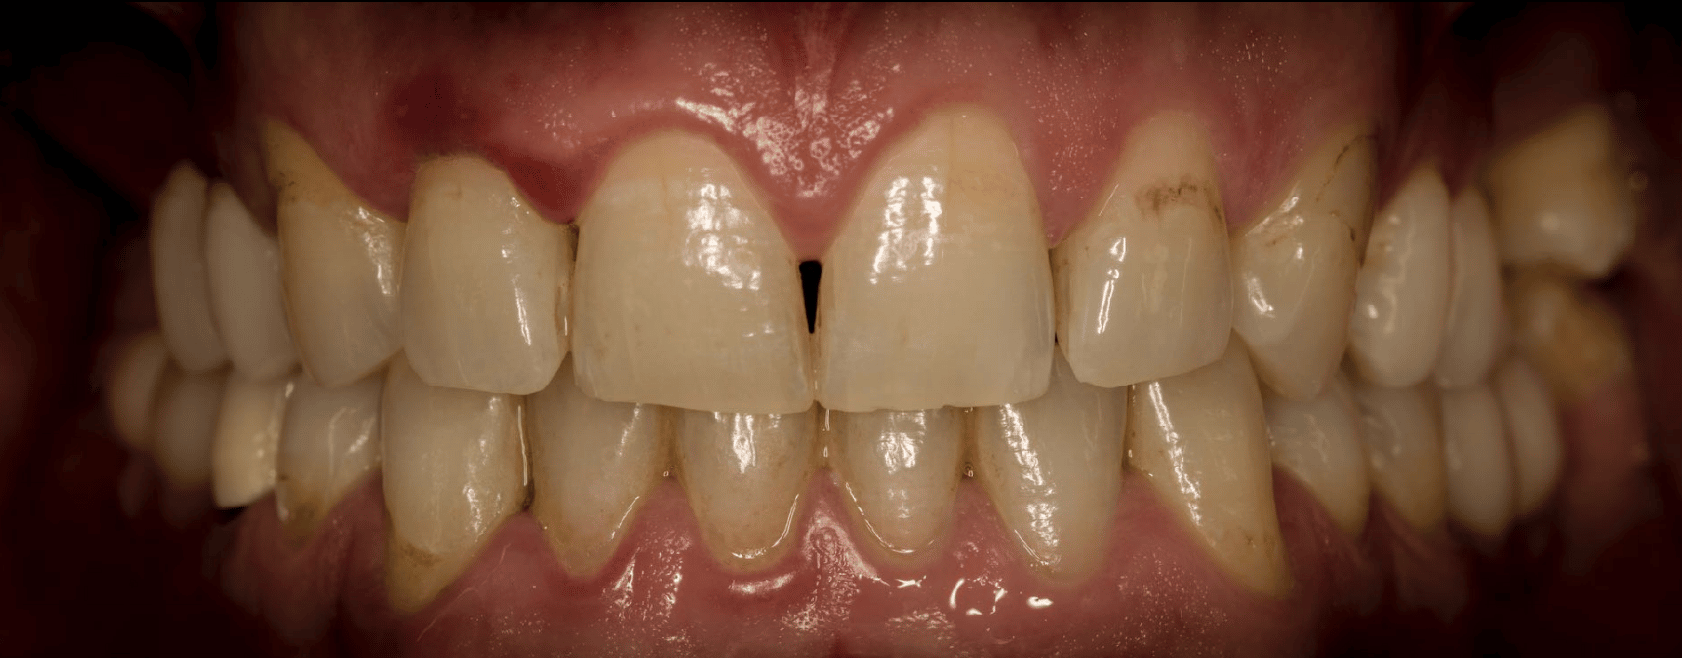 ausencias dentales sectores posteriores maxilar superior